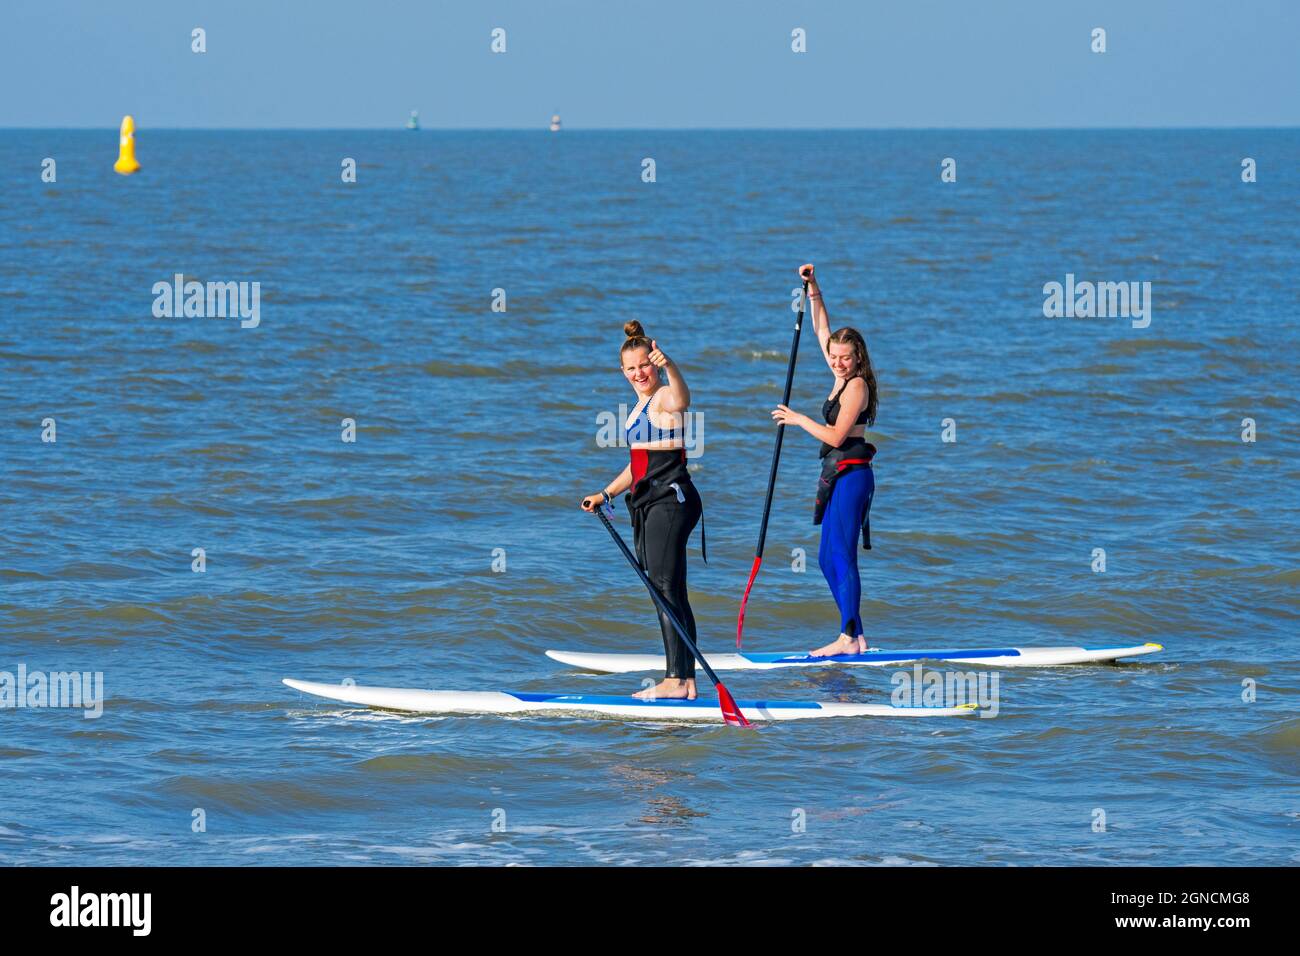 Zwei weibliche Paddlebarder üben den Wassersport Stand Up Paddleboarding / Stand Up Paddle Boarding / SUP entlang der Nordseeküste Stockfoto